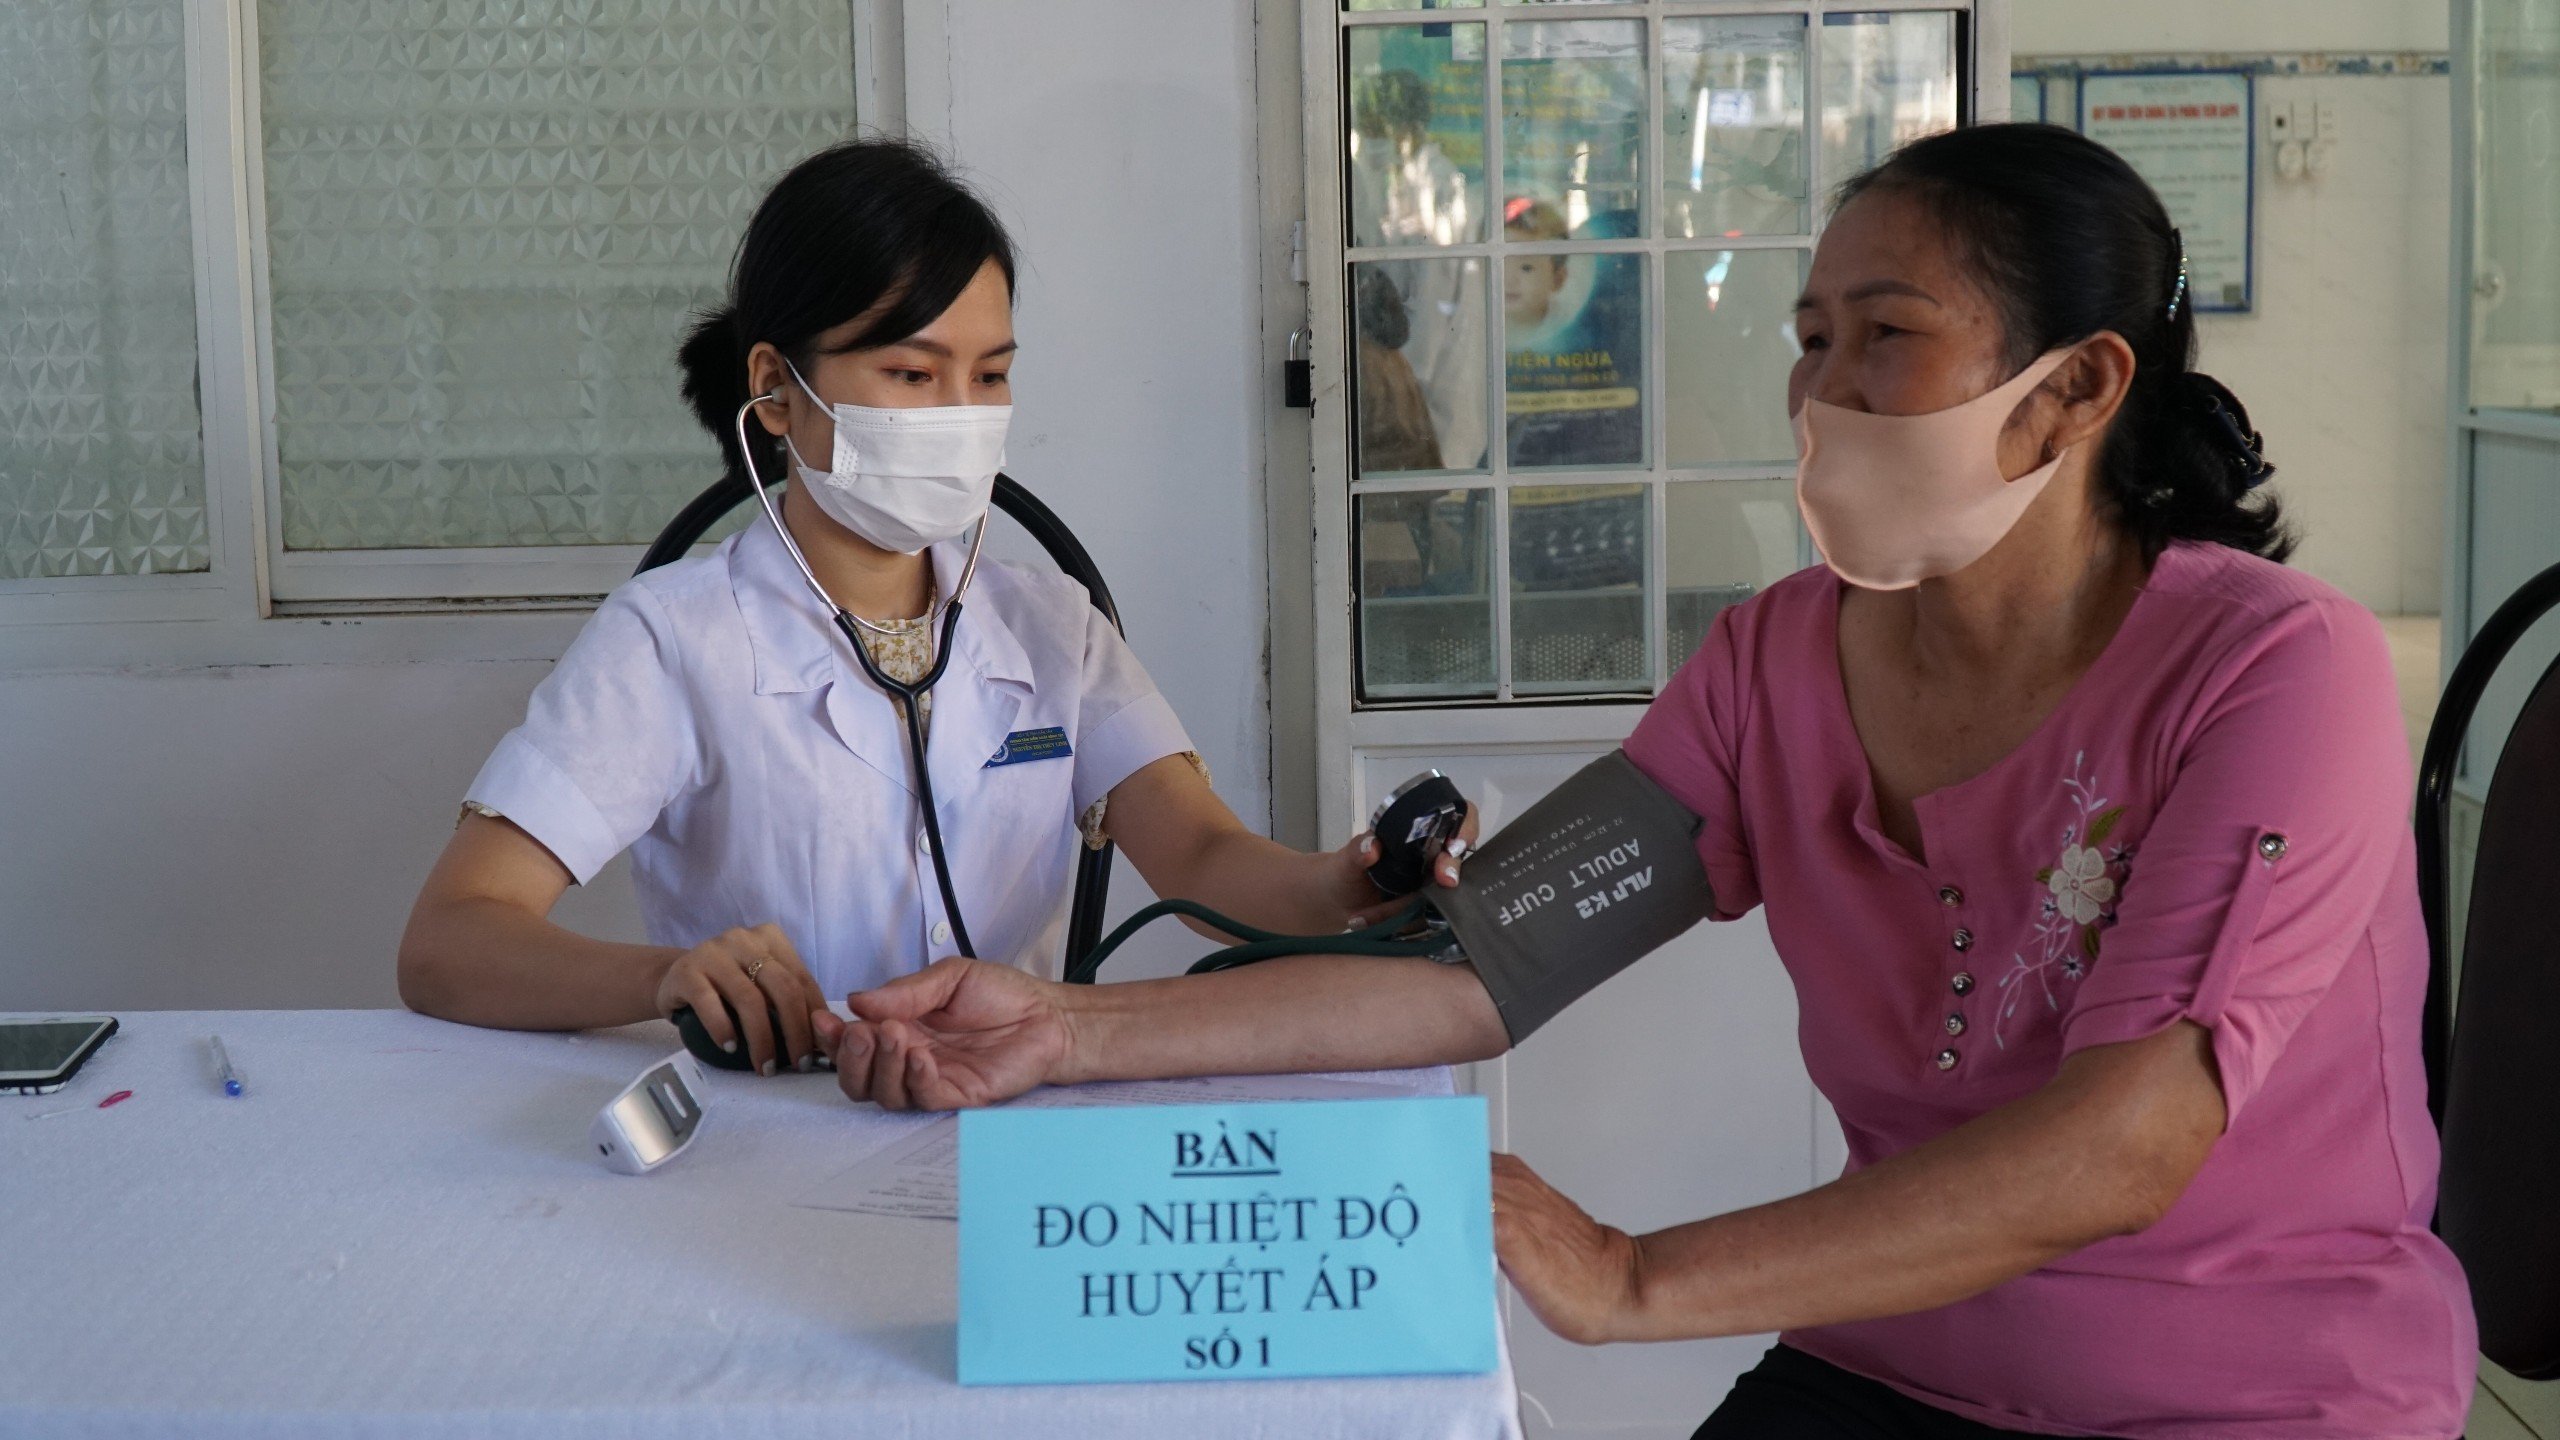 Đánh giá giữa kỳ mô hình lồng ghép tiêm chủng mở rộng và sàng lọc, quản lý điều trị bệnh không lây nhiễm tại Đắk Lắk